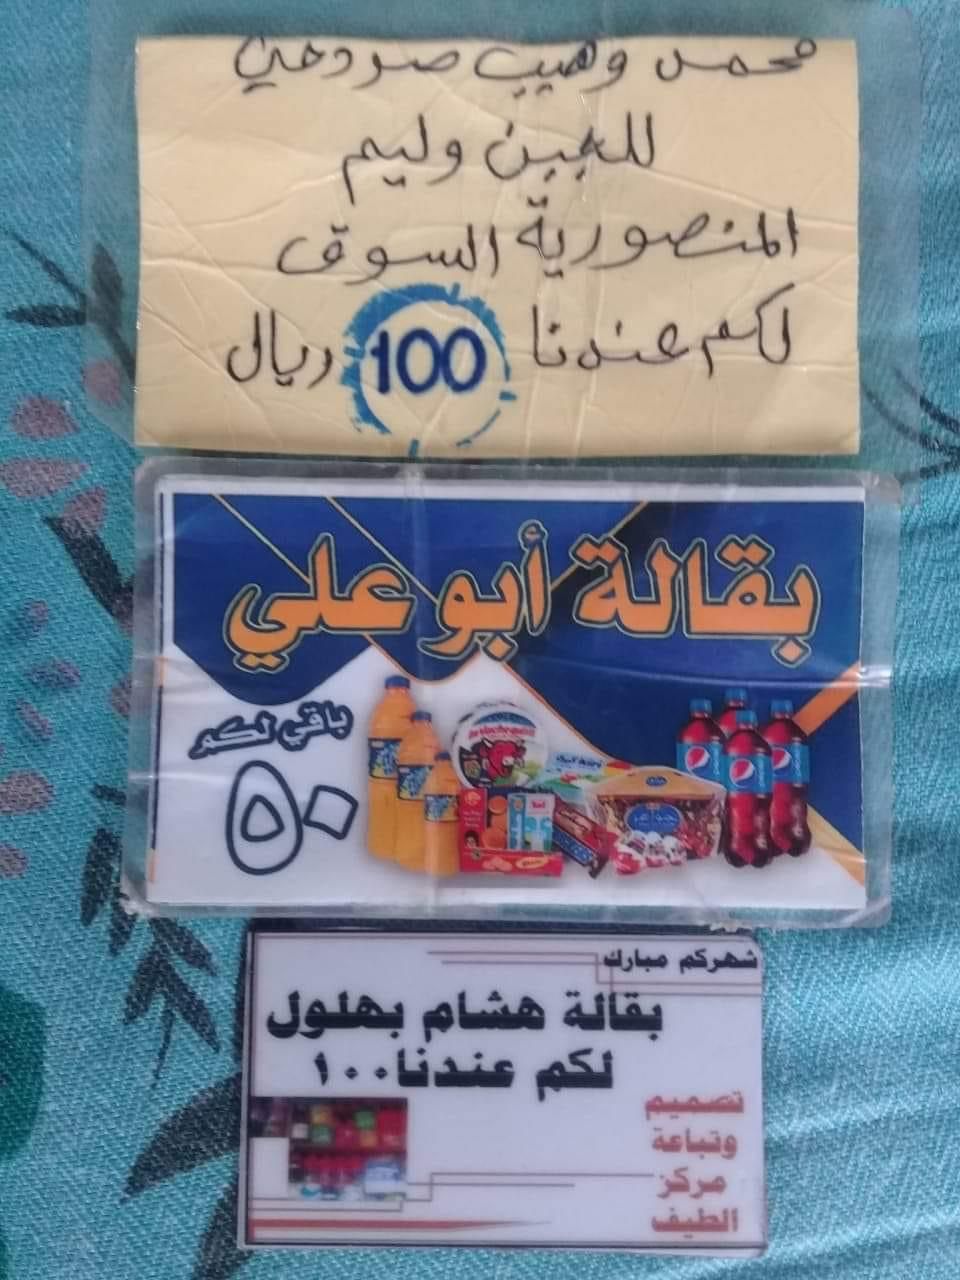 مواطنون يستخدمون "قصاصات ورقية" بدلاً عن العملة في مناطق سيطرة الحوثيين